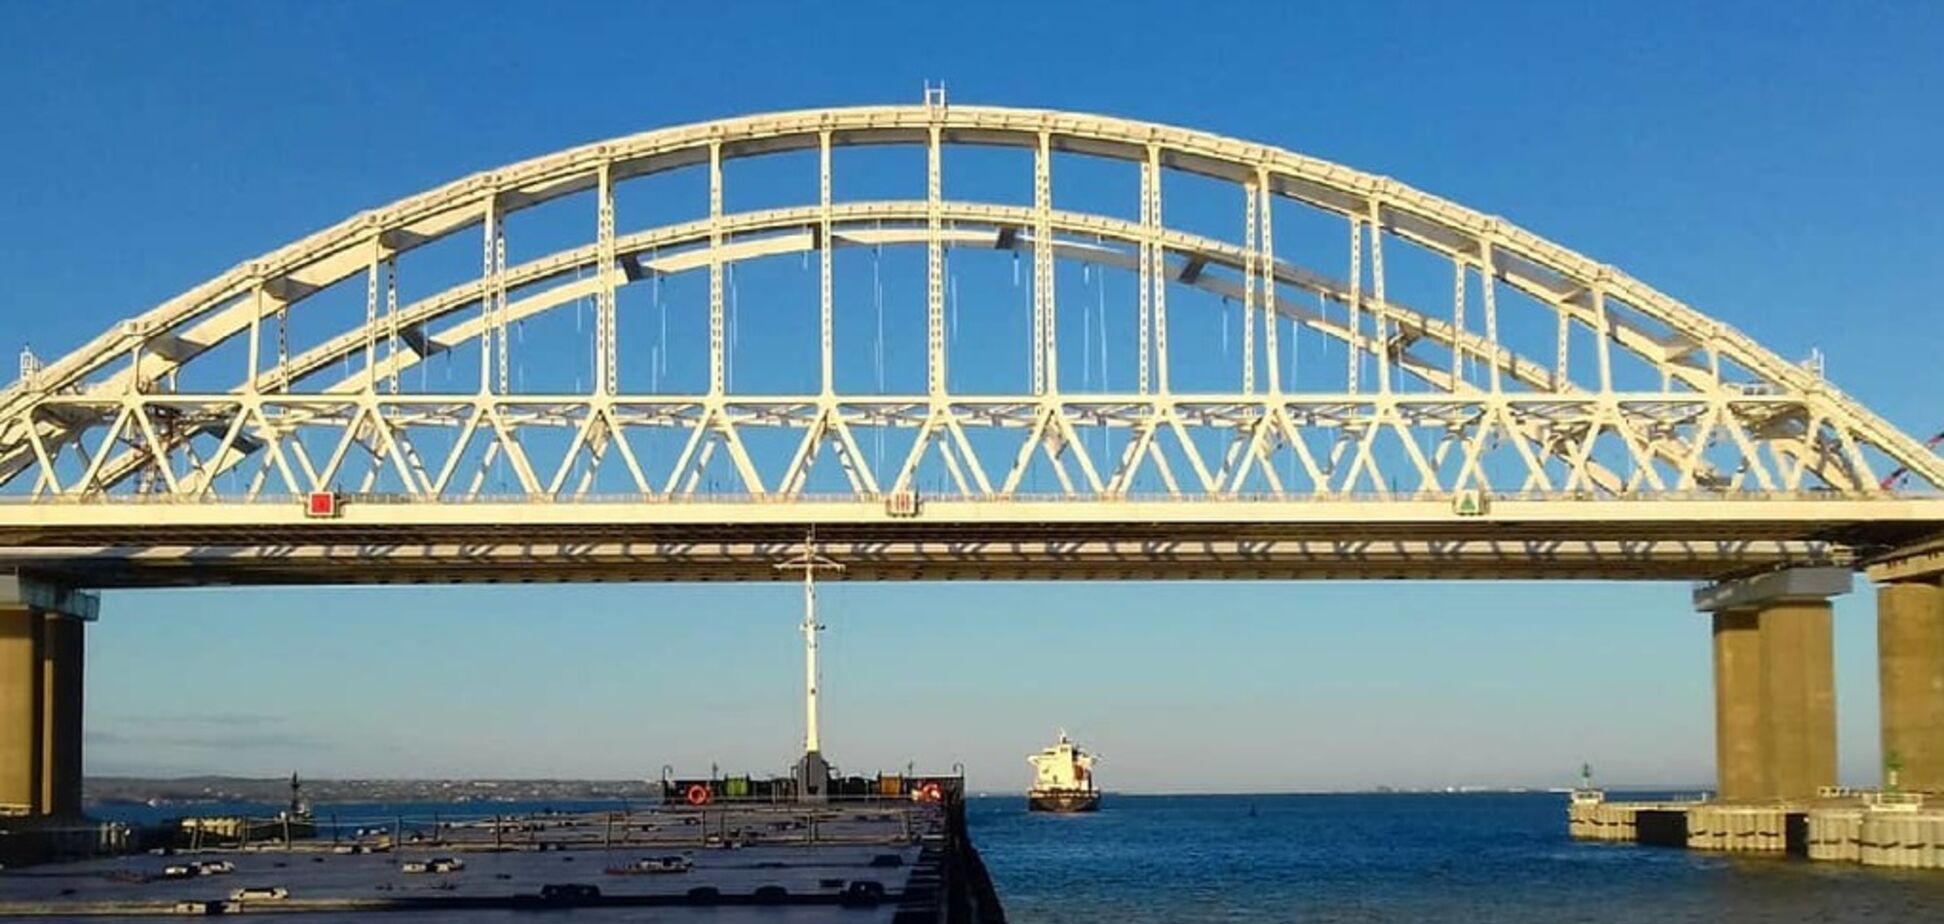 'Це ж картонна копія!' Свіже фото Кримського мосту викликало резонанс в мережі